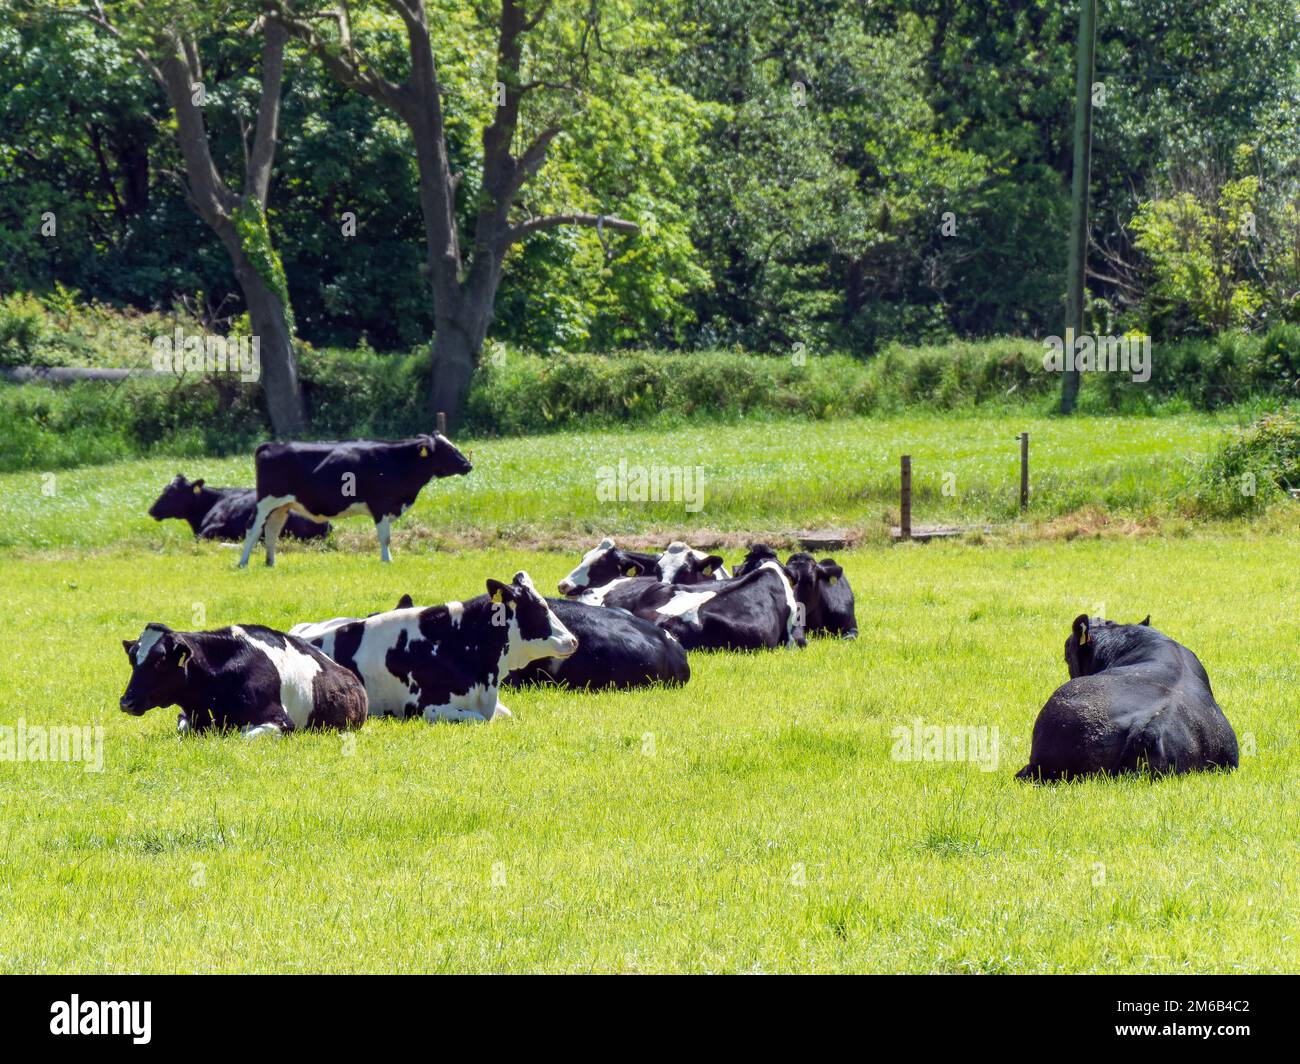 Plusieurs vaches et un taureau noir se trouvent sur un pré vert le jour ensoleillé du printemps. Bétail sur pâturage libre. Ferme écologique, paysage. Lyi de vache noir et blanc Banque D'Images